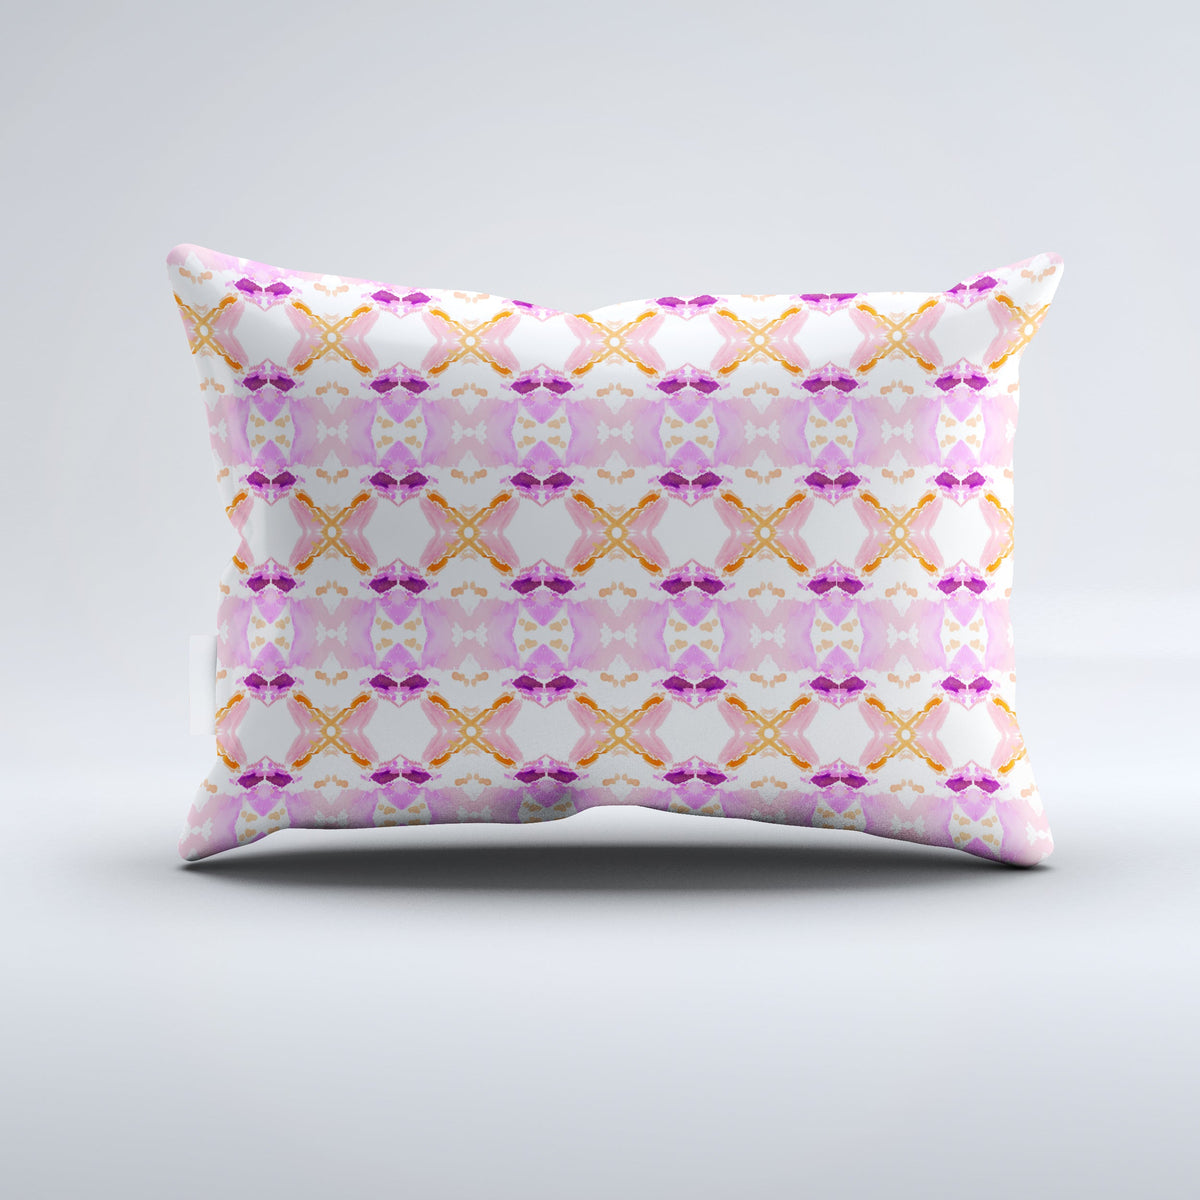 Bolster Pillow - Nova Pink Monarch Bedding, Pillows, Bolster Pillow MWW 